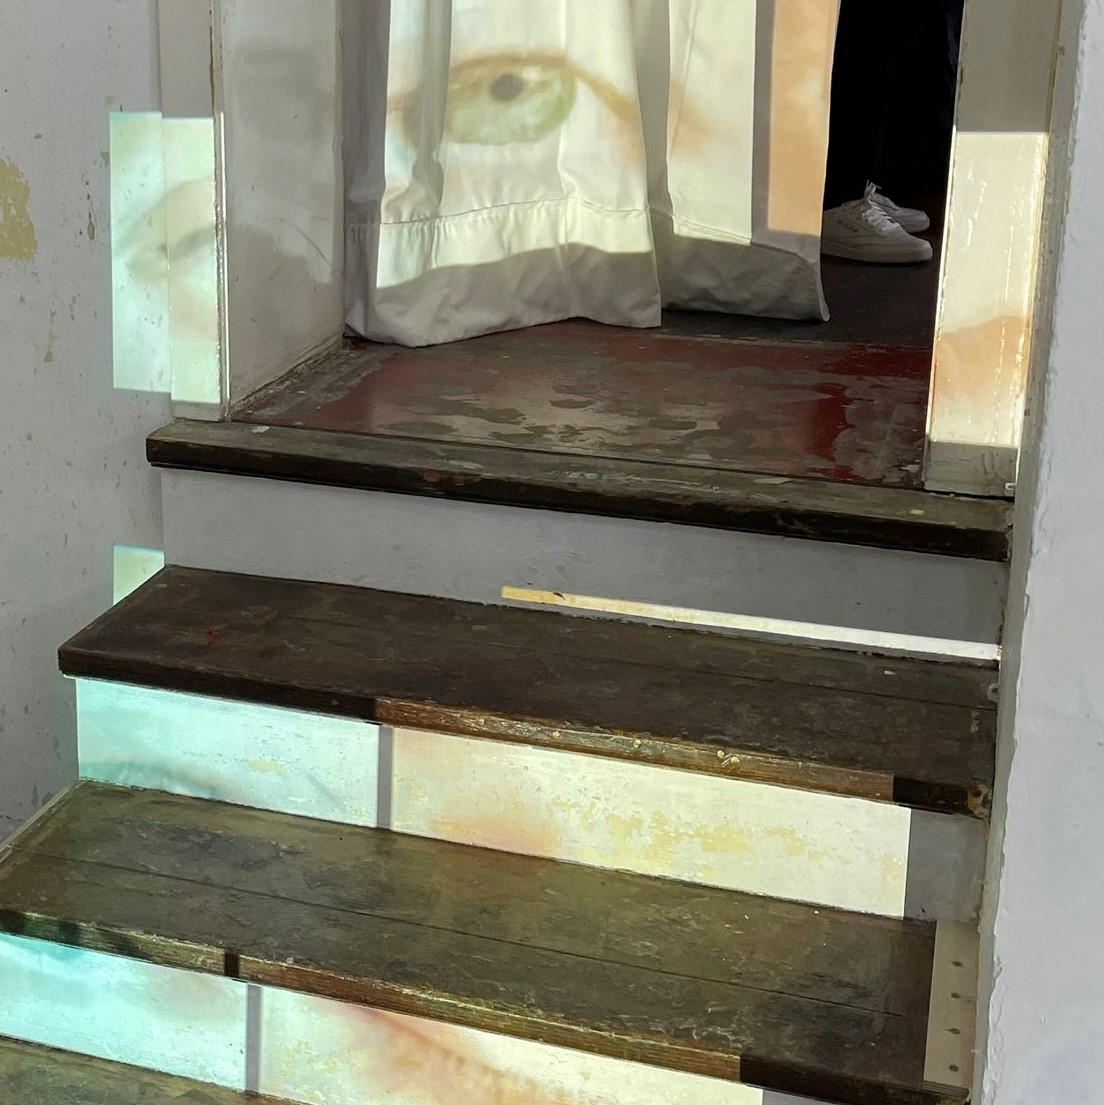 Zu sehen ist eine Kunstinstallation mit einer Treppe.